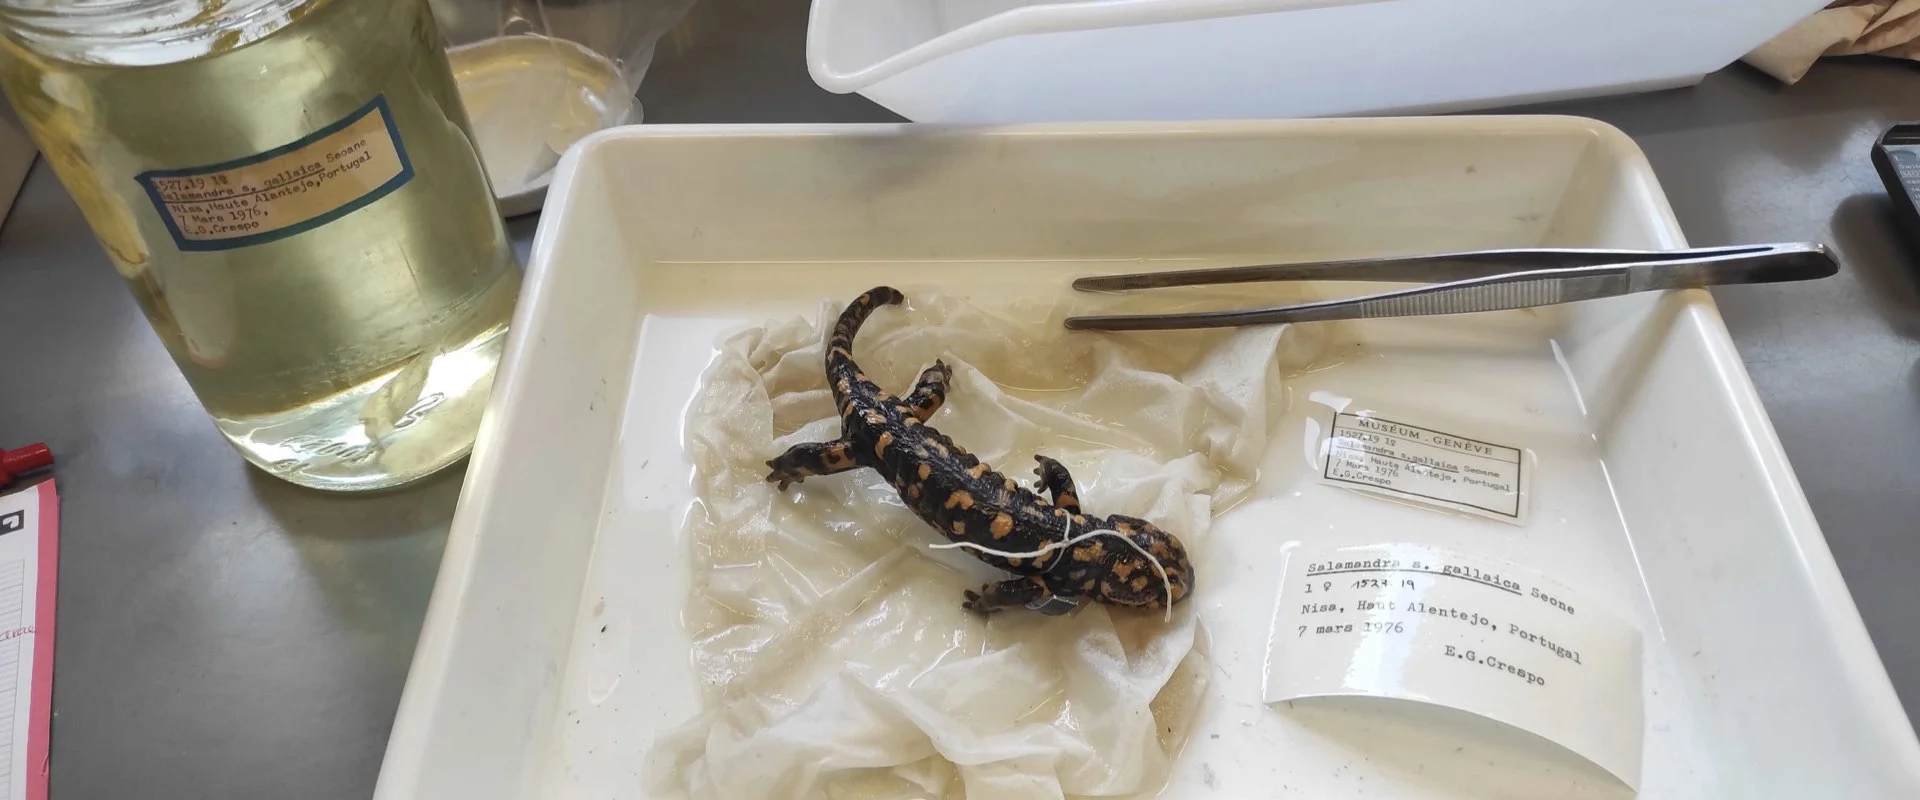 Ein konserviertes Salamander-Exemplar in einer Schale